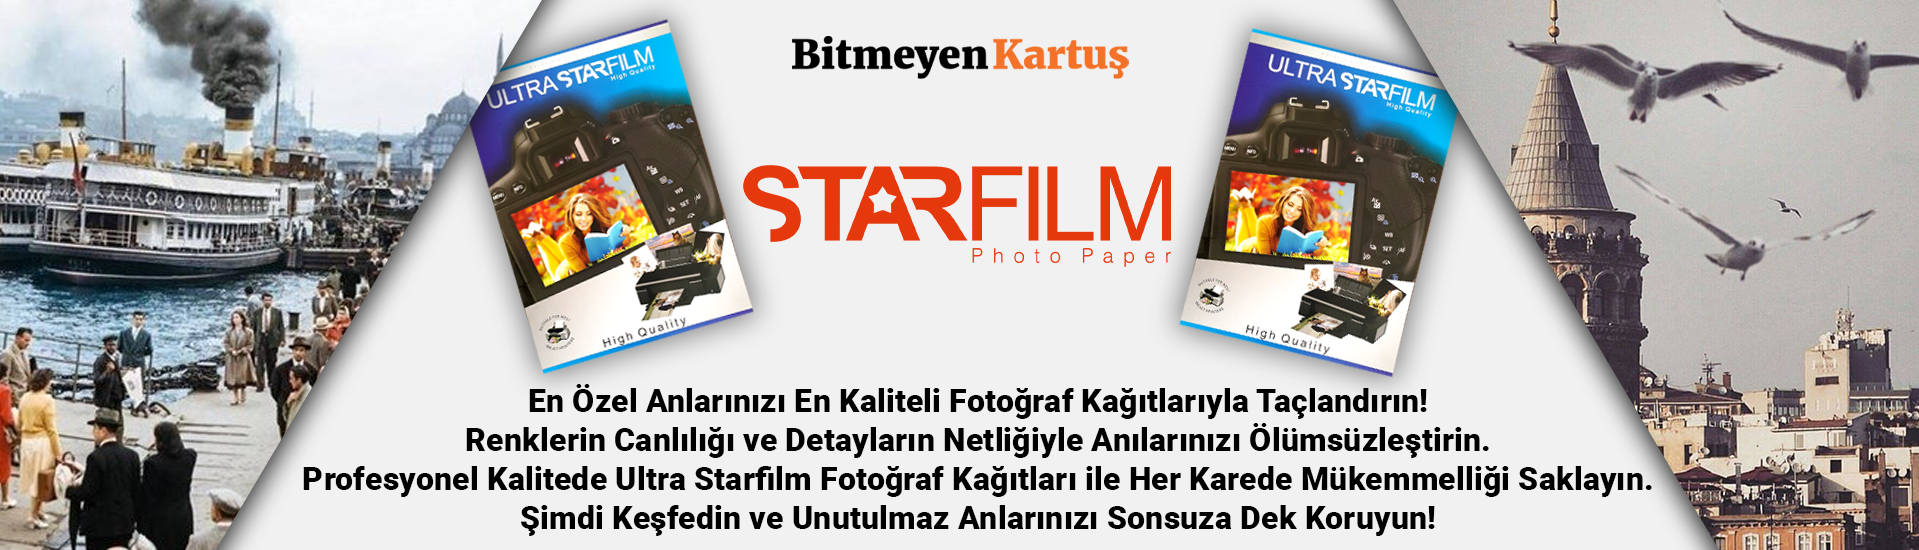 starfilm